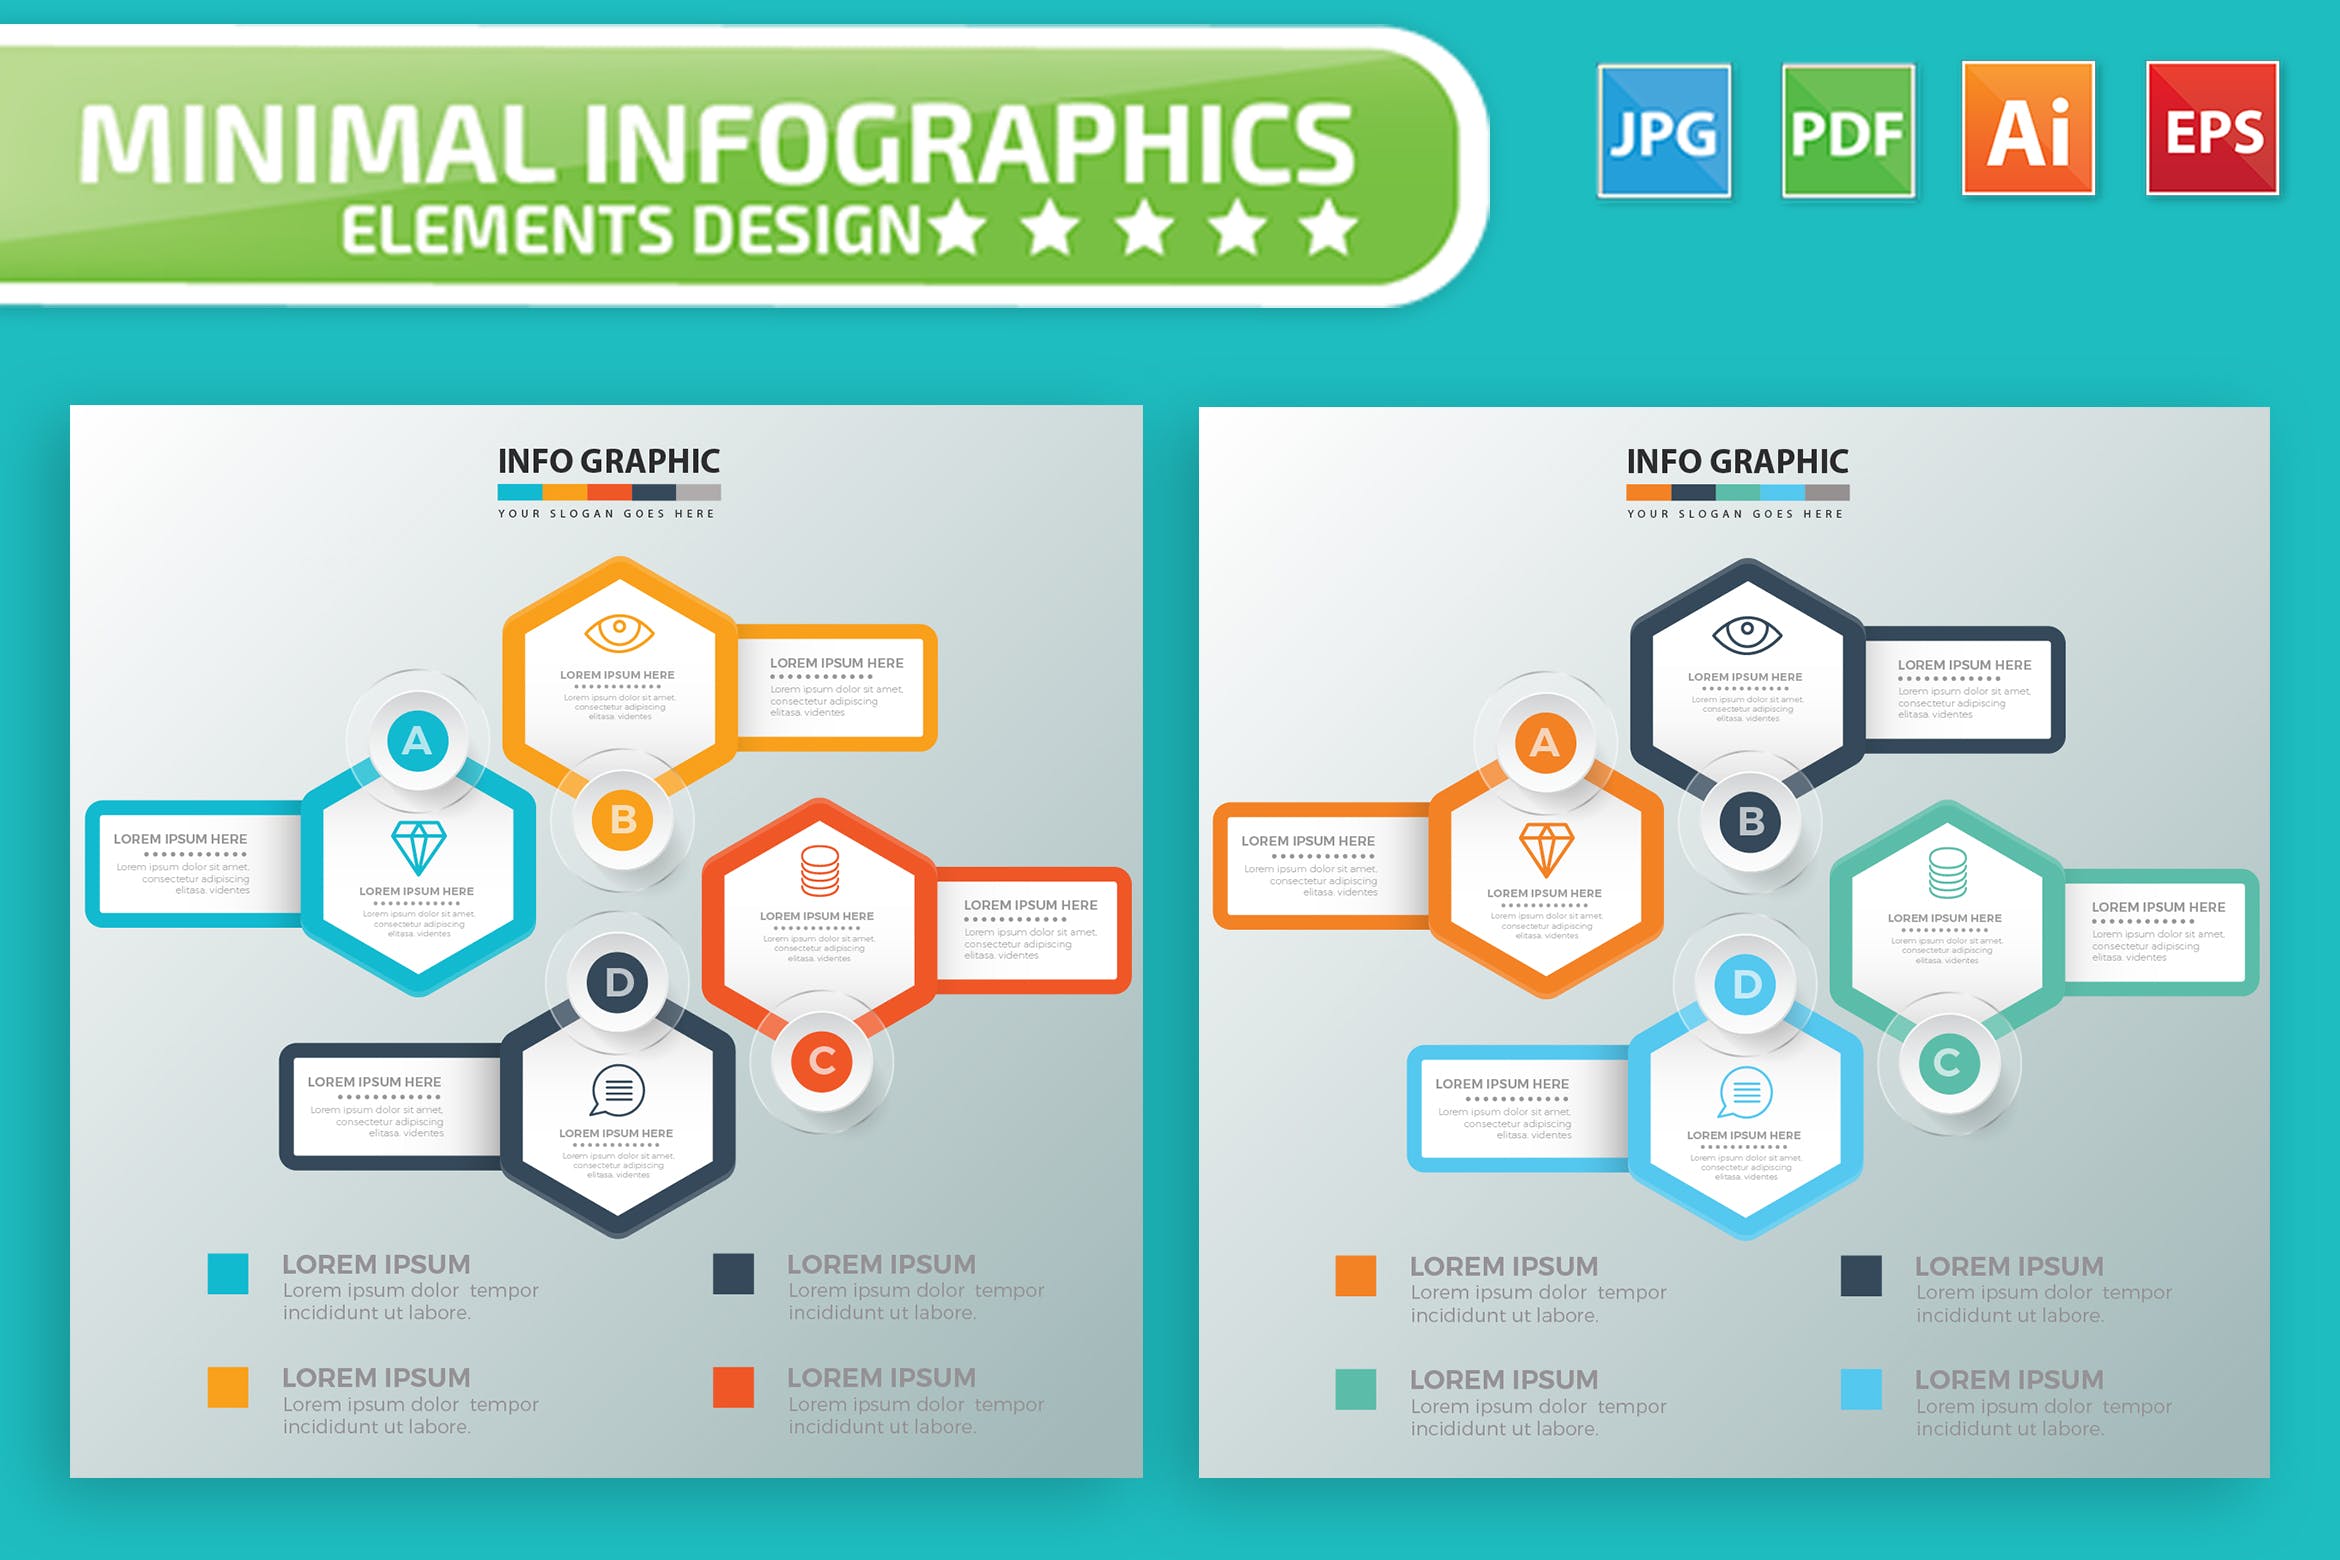 要点说明/重要特征信息图表矢量图形大洋岛精选素材v7 Infographic Elements Design插图